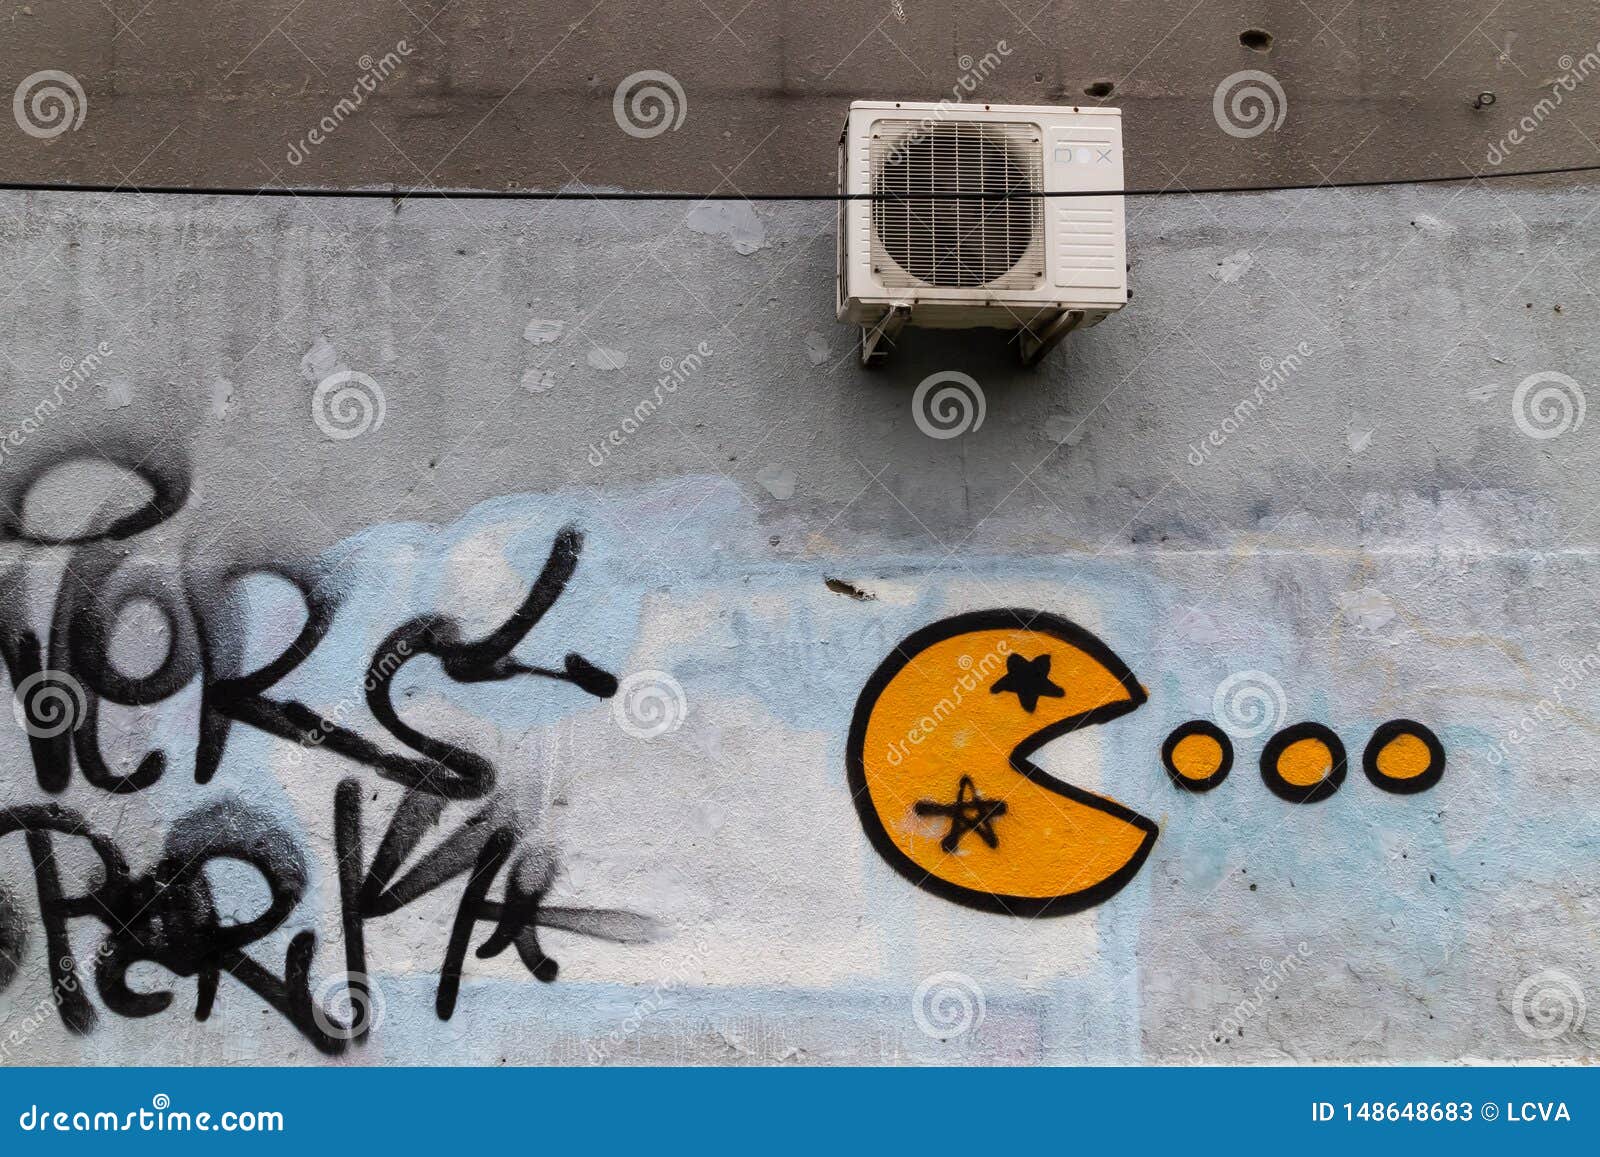 Poster Pac-Man Arcade Affiche Handmade Graffiti Street Art Artwork 